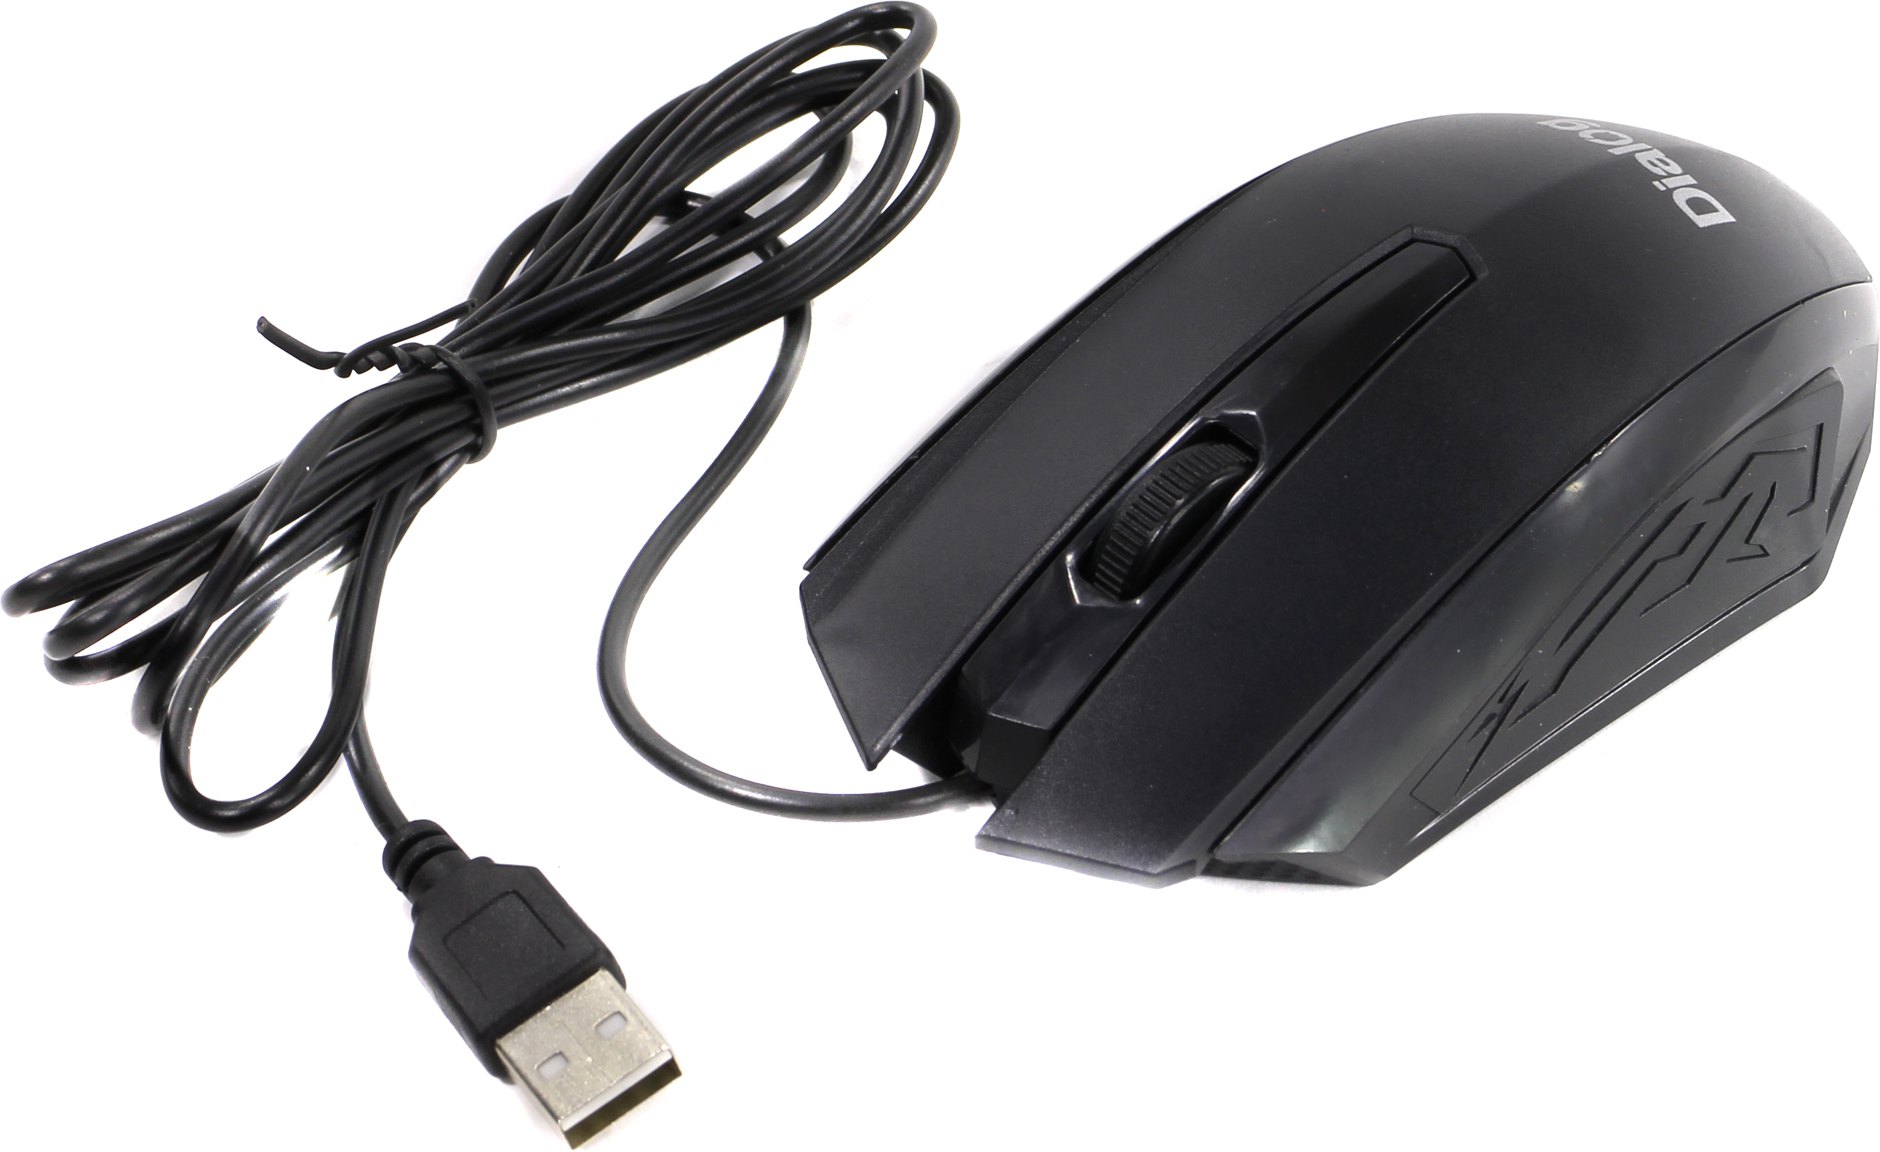 Мышь проводная Dialog Comfort Optical, 1200dpi, оптическая светодиодная, USB, черный (MOC-19U)